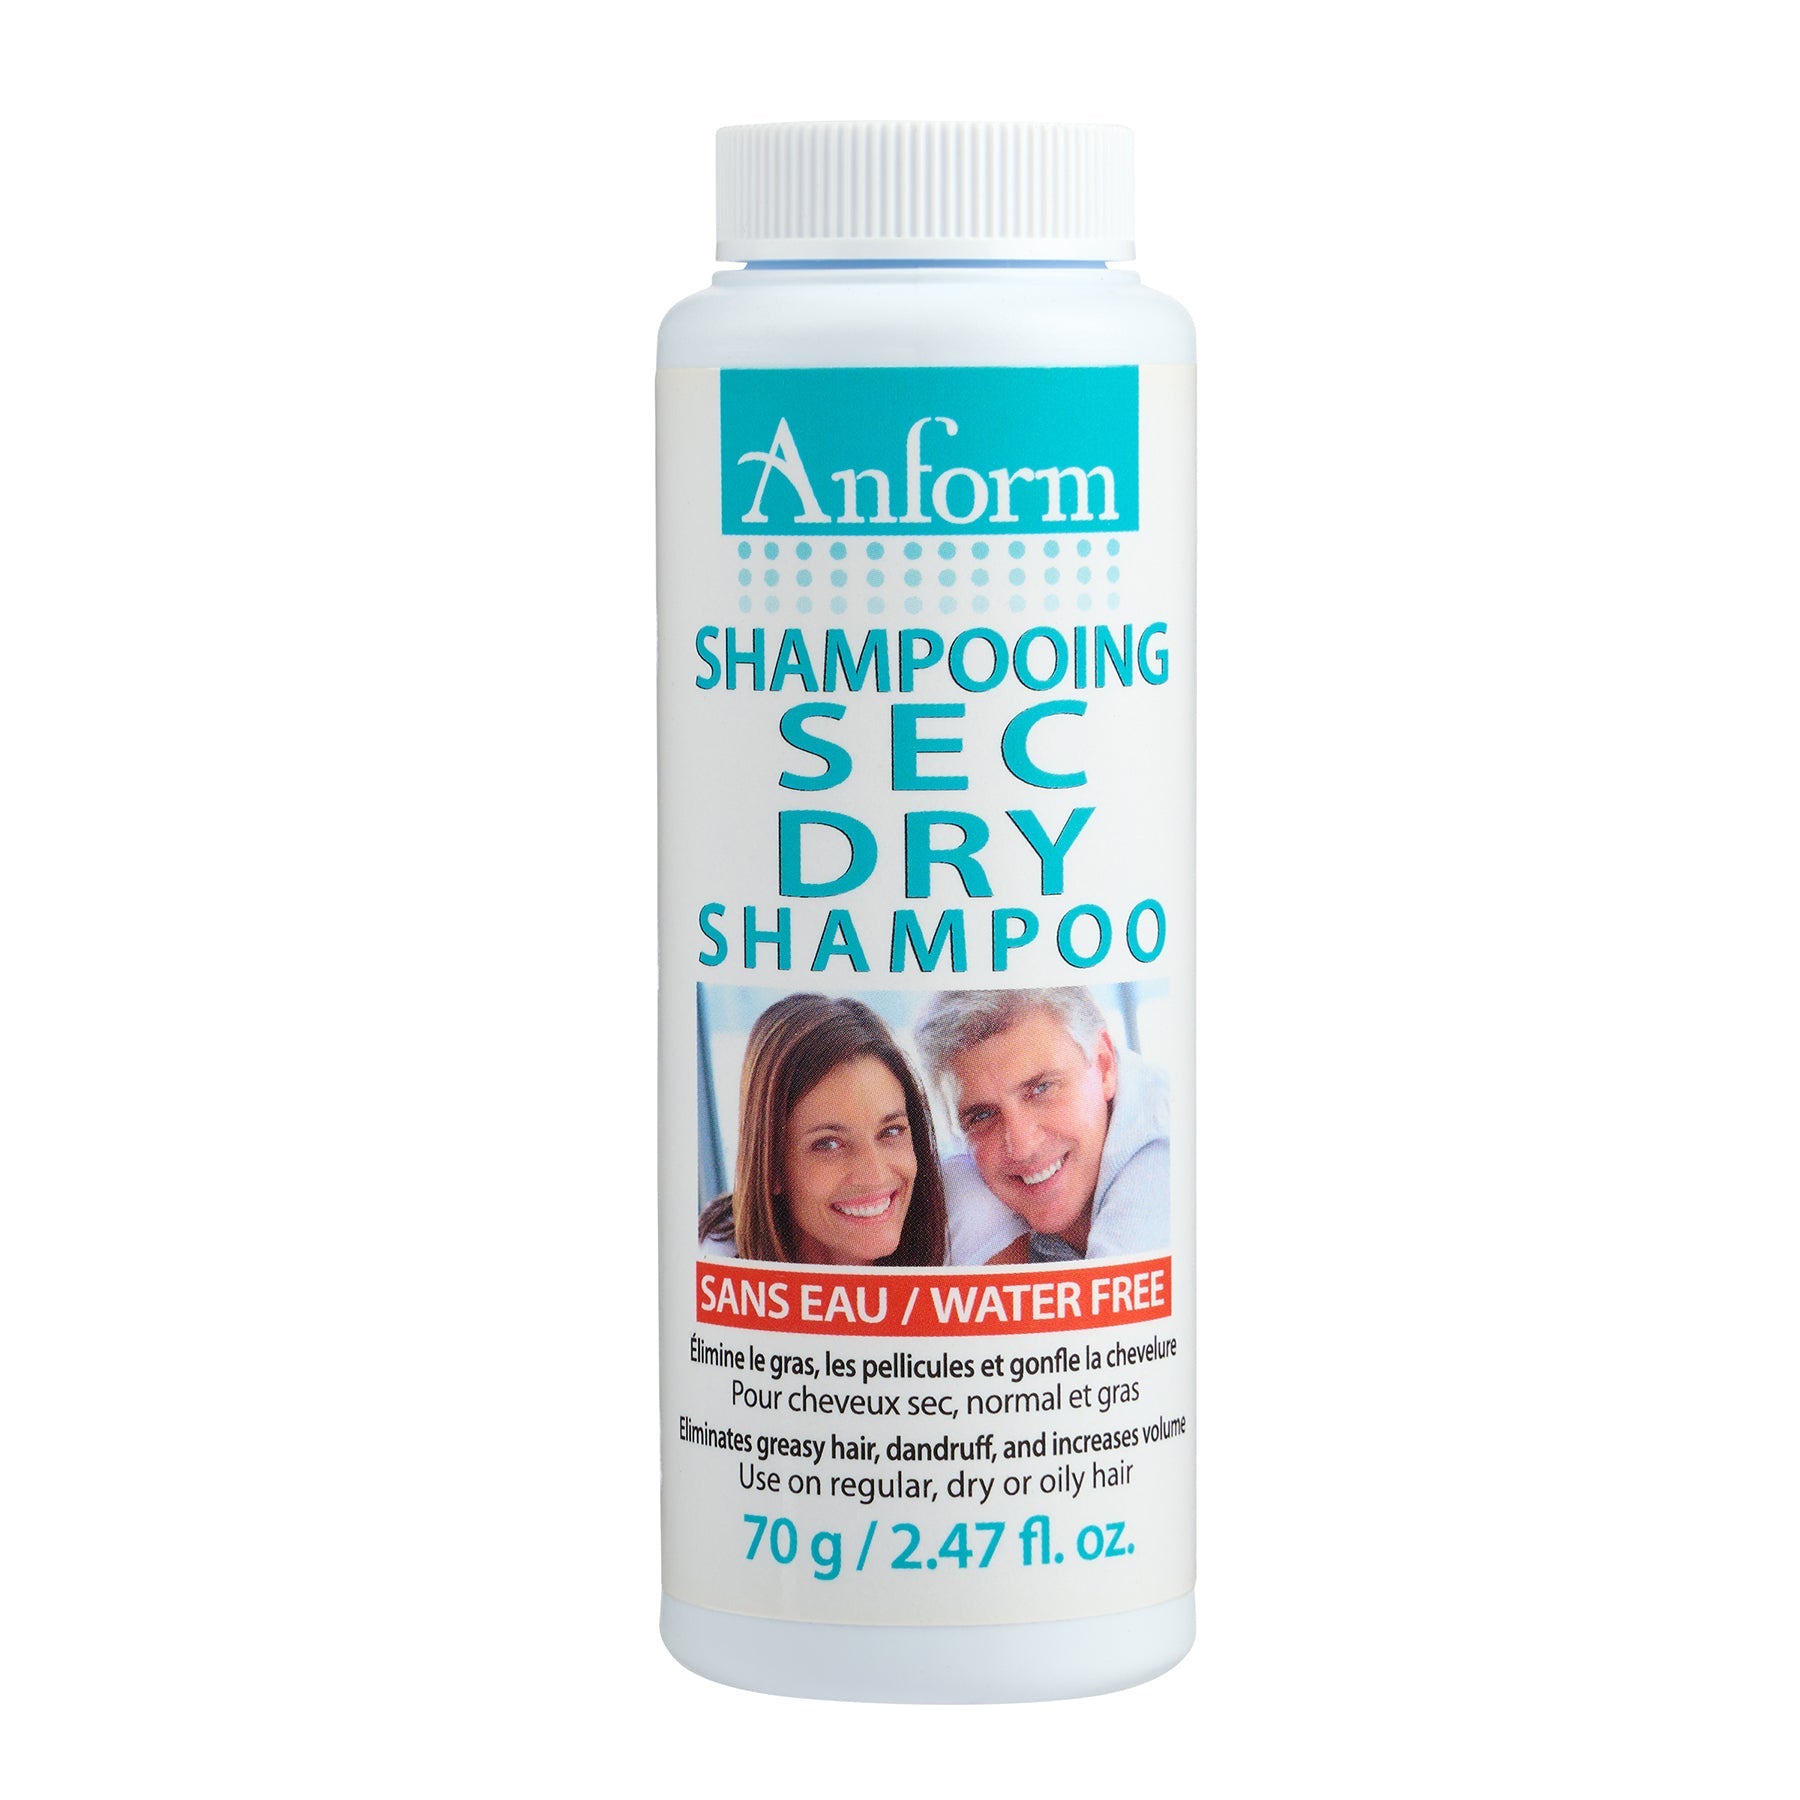 Anform Dry Shampoo 2.47oz